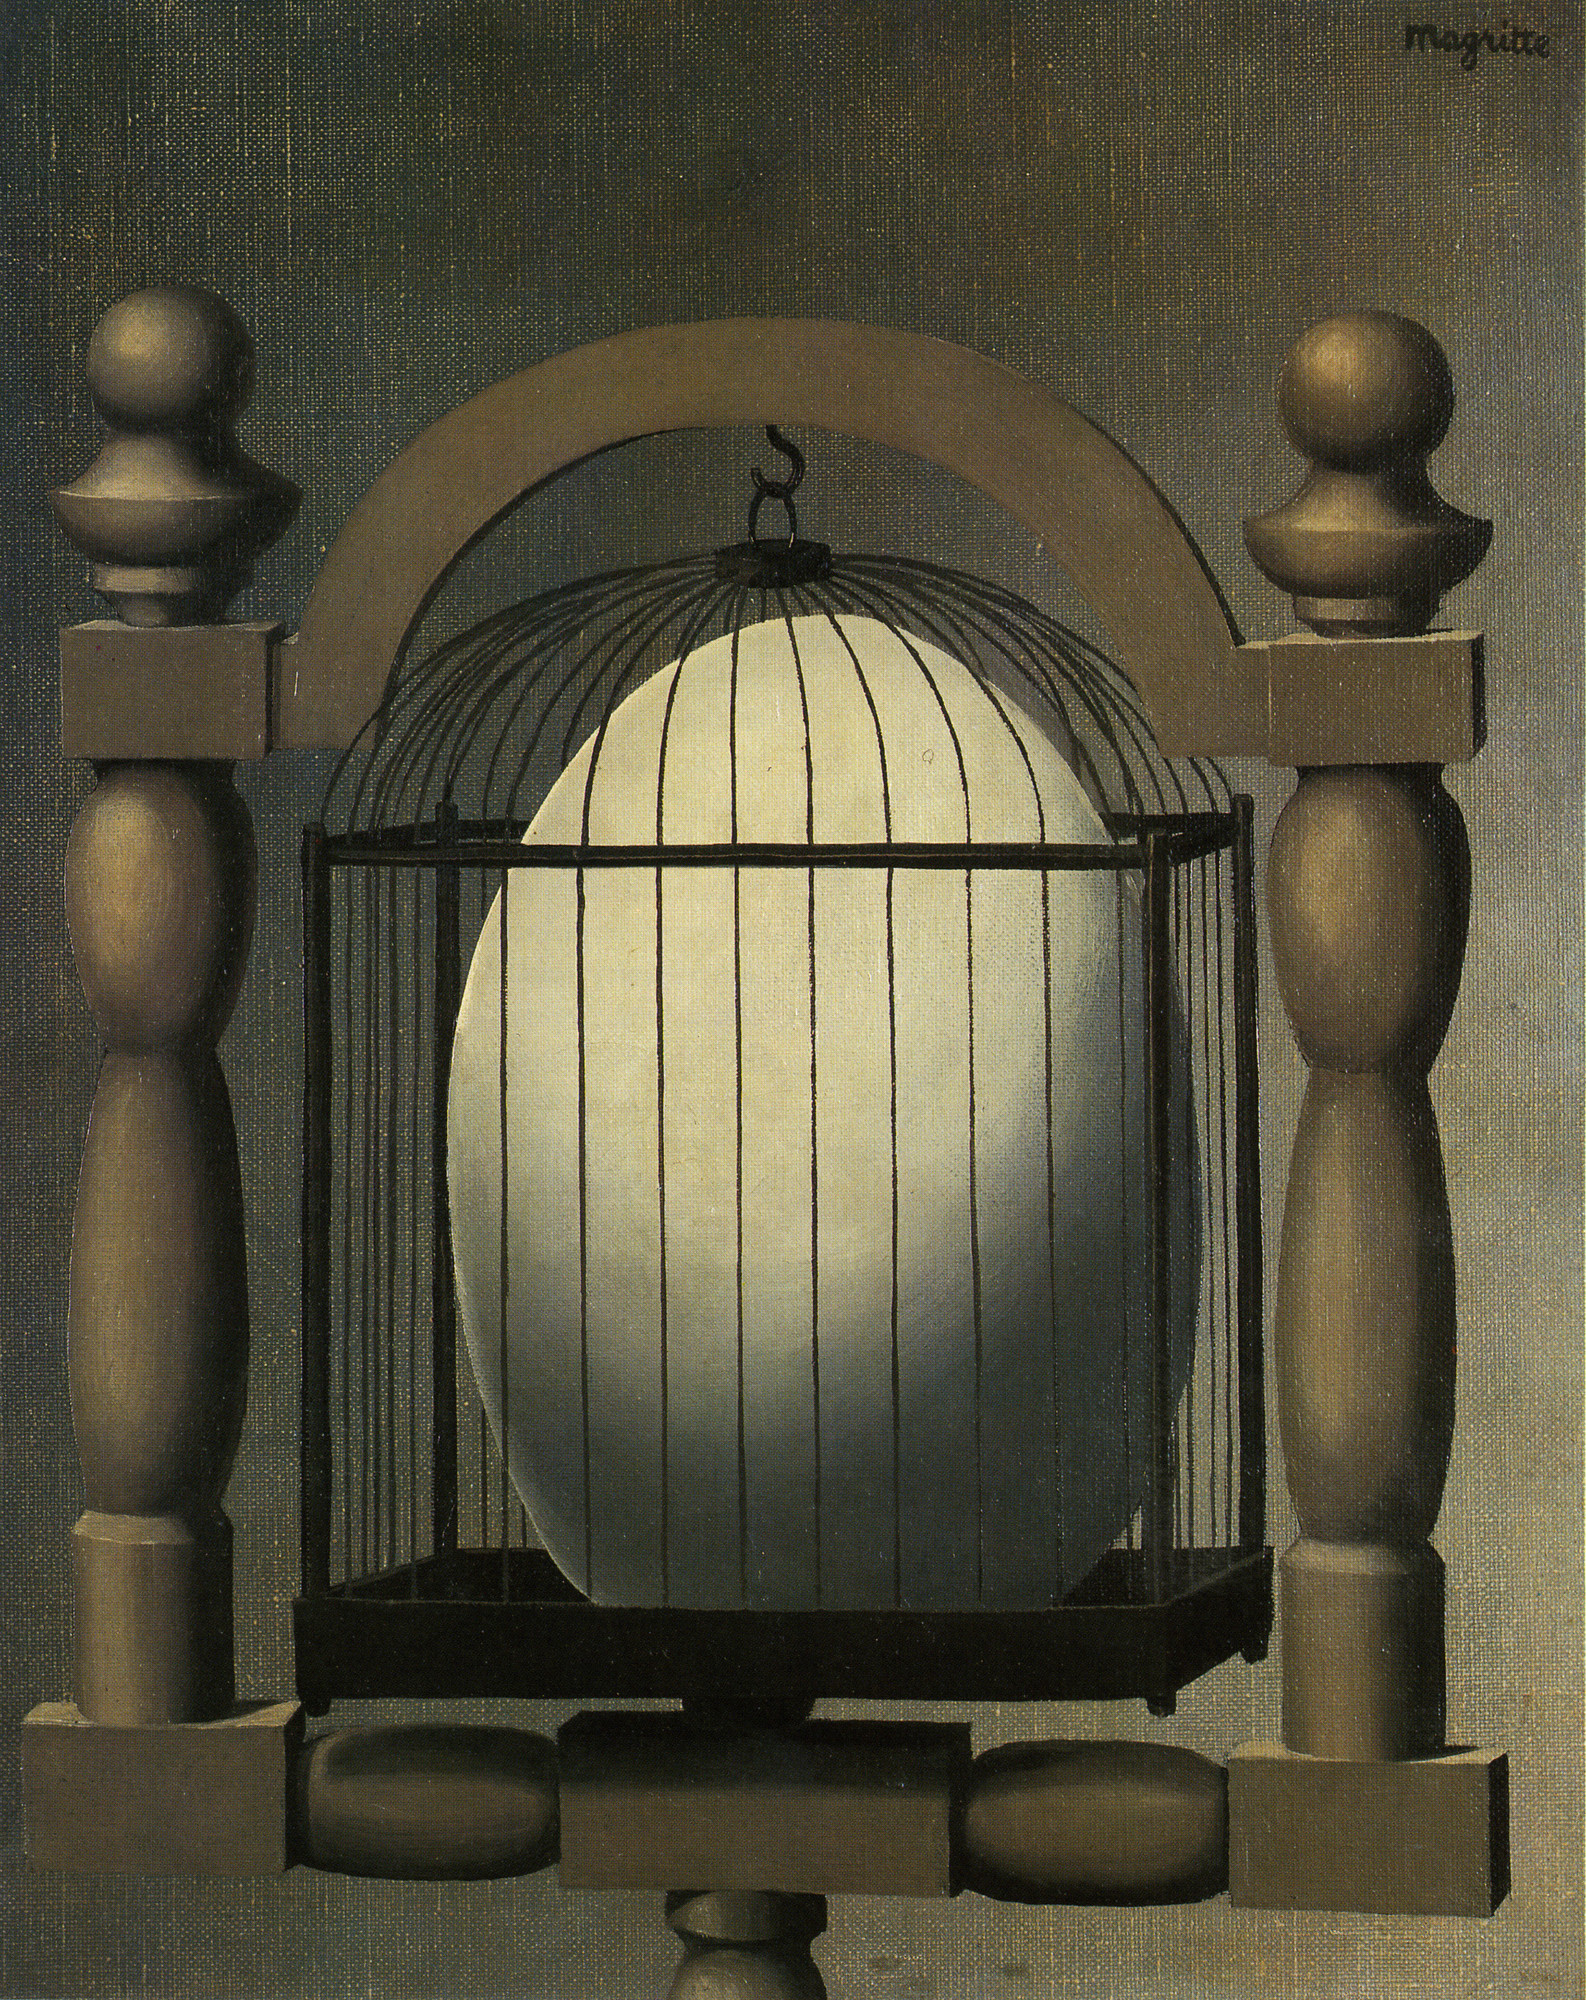 René Magritte. _Les Affinités électives (Elective Affinities)._ Brussels, 1932